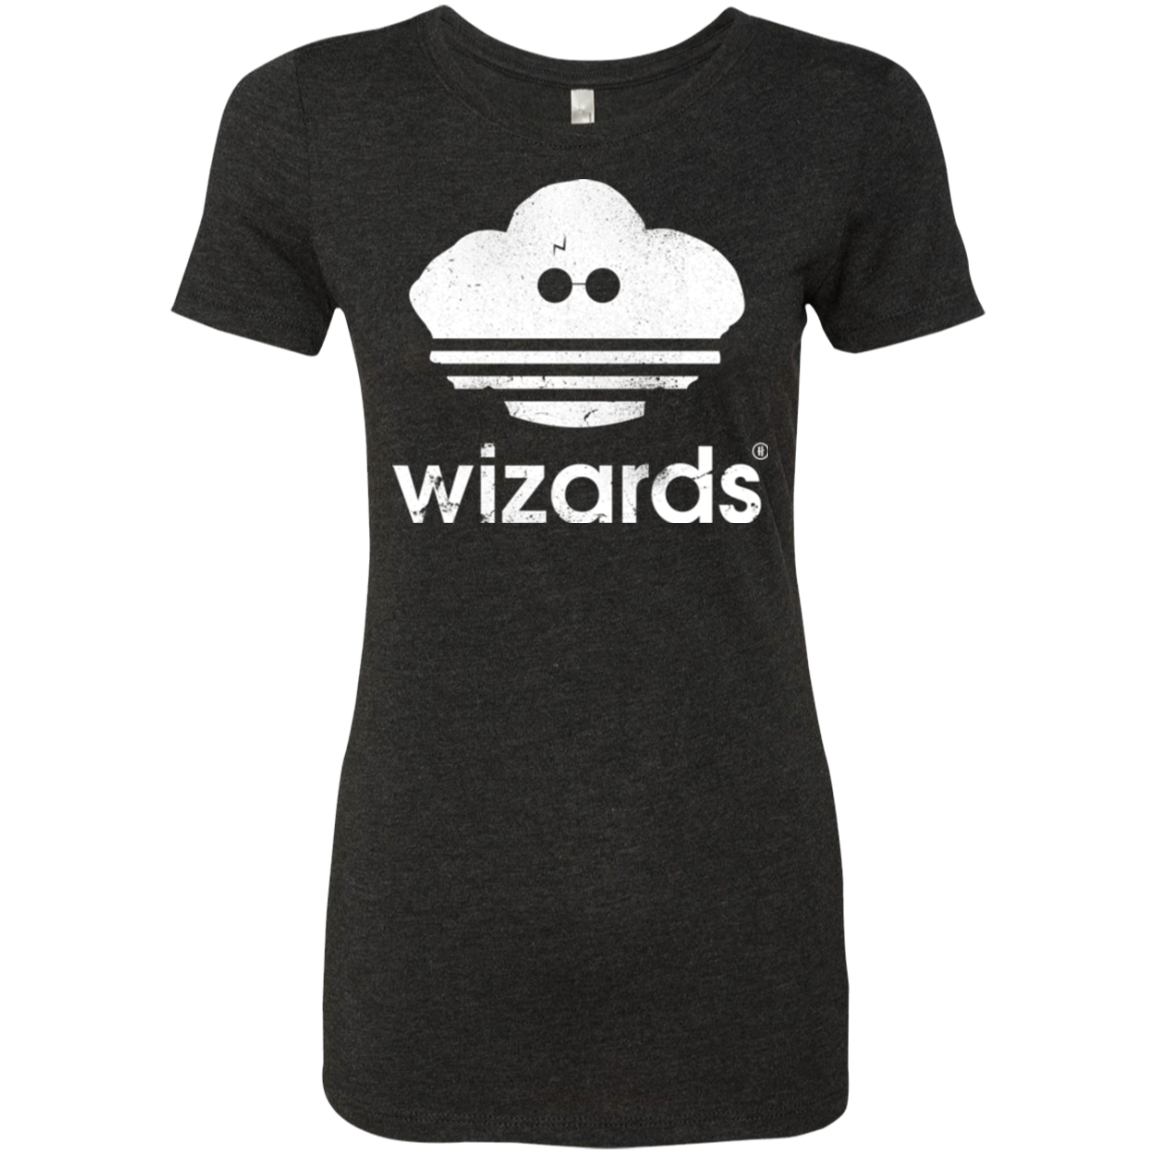 Wizards Women's Triblend T-Shirt